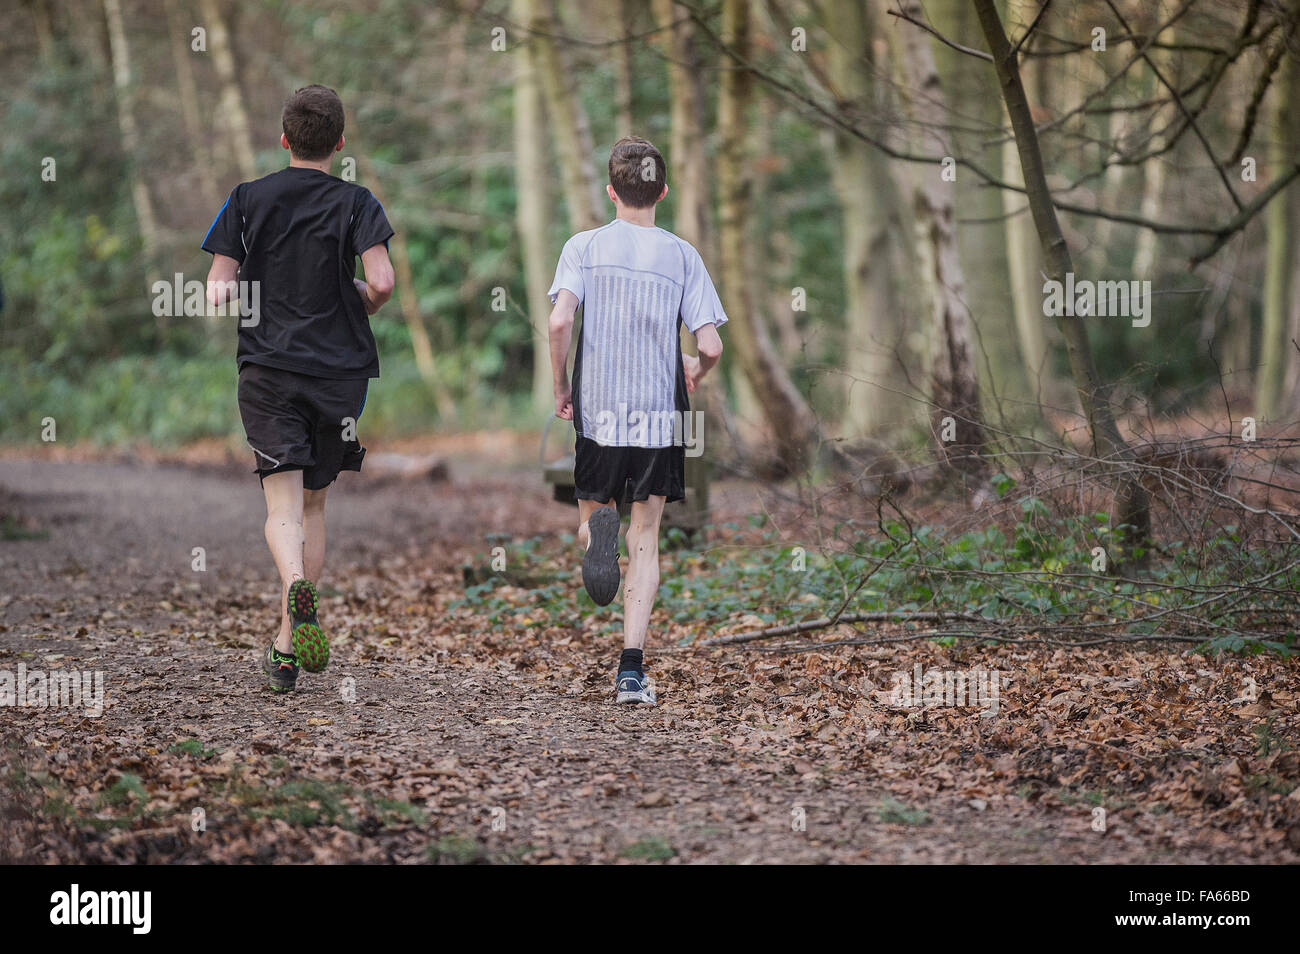 Zwei Läufer trainieren in Thorndon Park Wald in Essex, England, Vereinigtes Königreich. Stockfoto